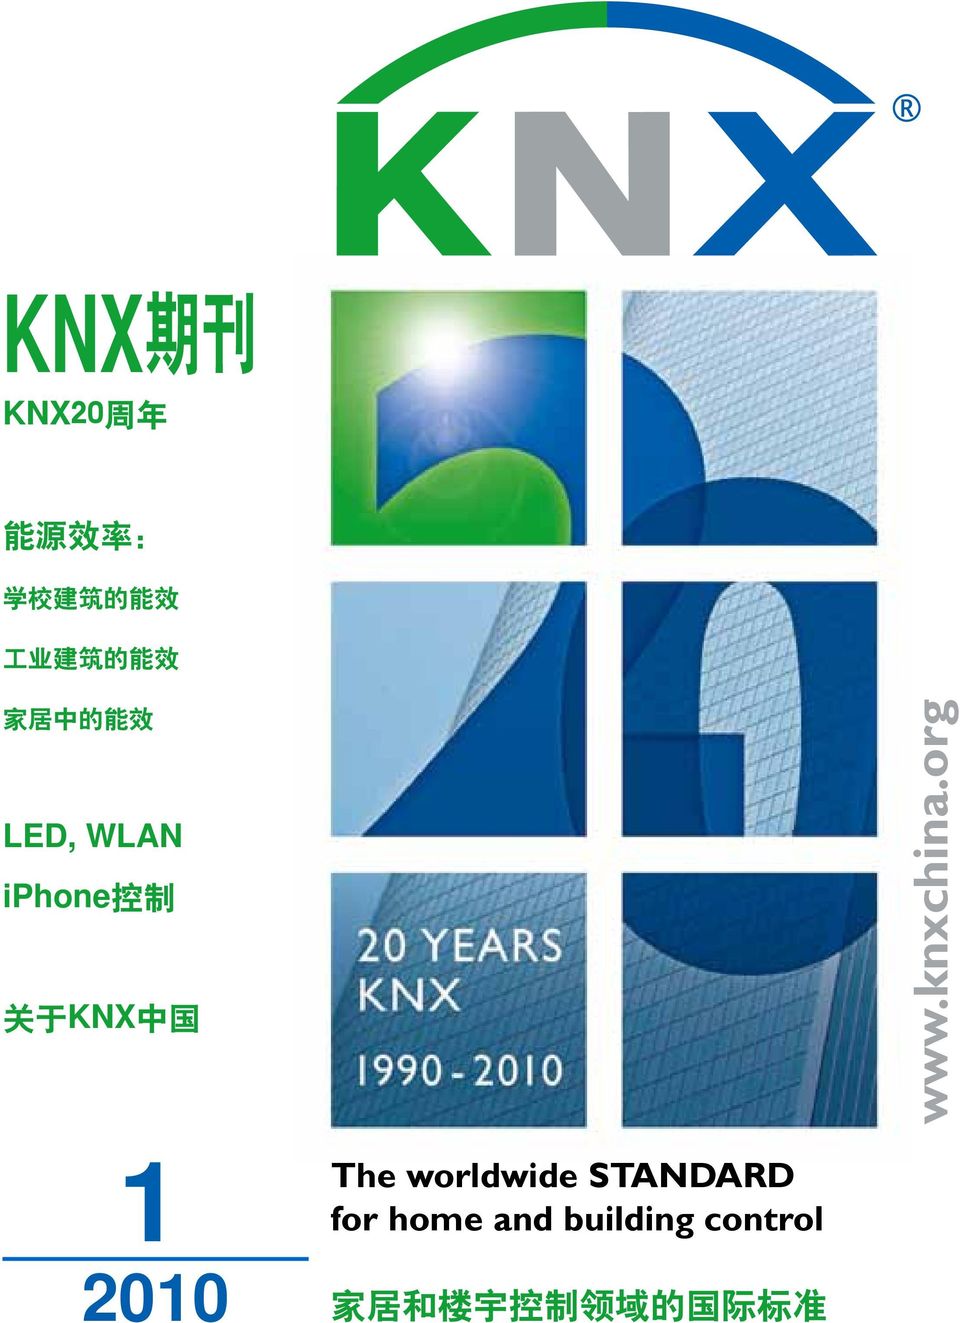 www.knxchina.